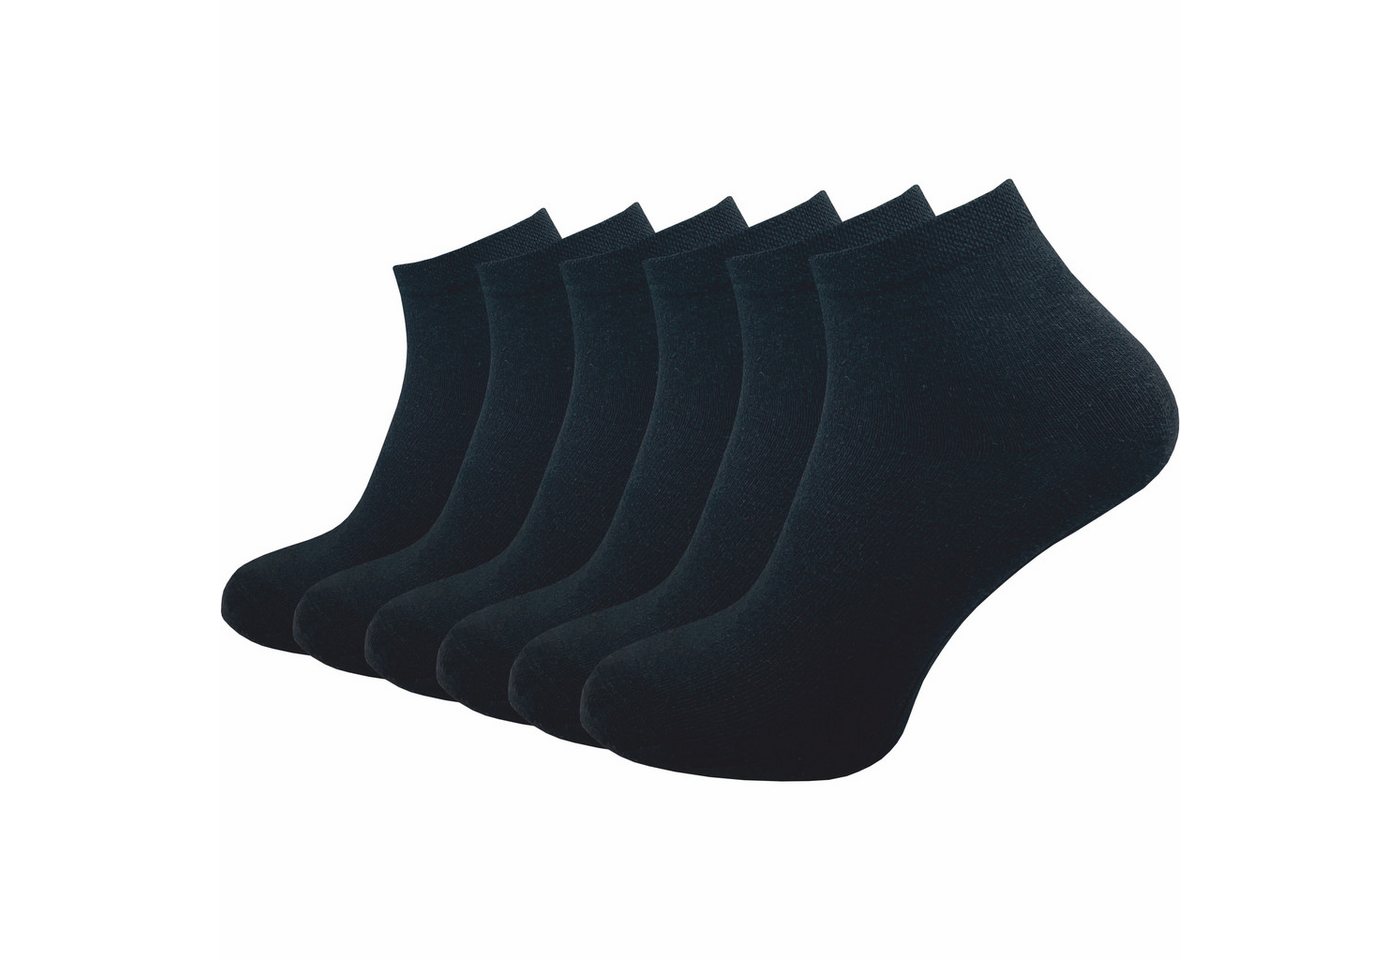 GAWILO Kurzsocken für Herren, Quartersocken in schwarz & weiß - ohne drückende Naht (6 Paar) Schaft etwas länger als bei einer Sneaker Socke, daher kein rutschen von GAWILO